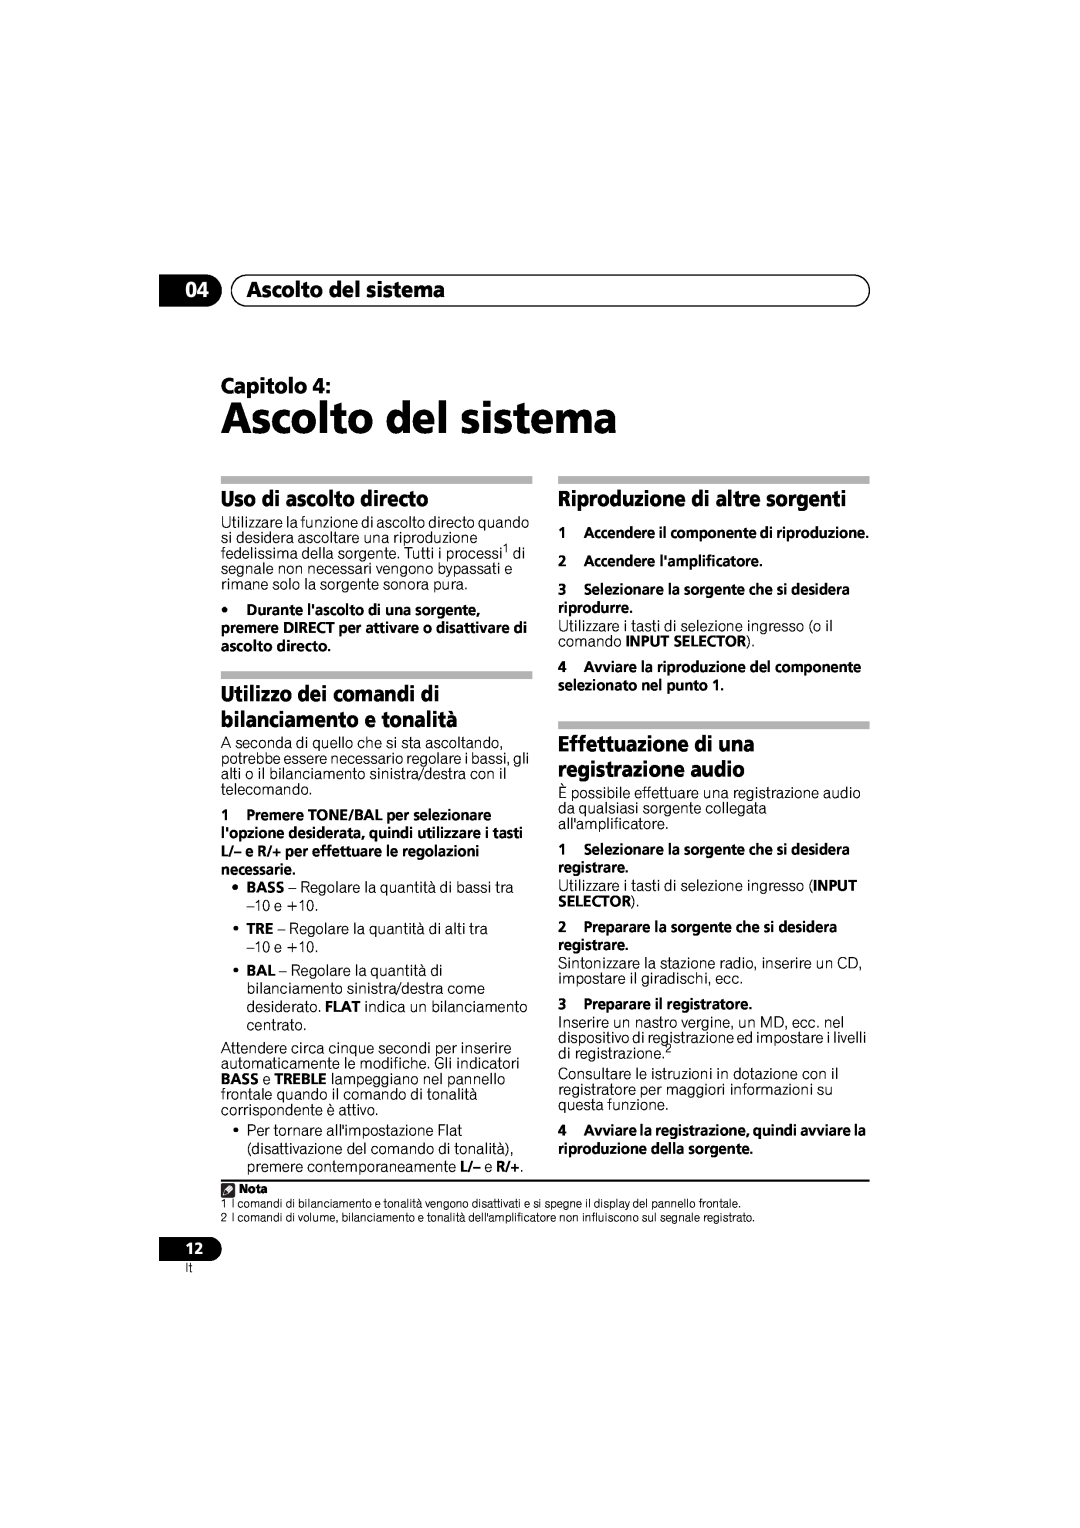 Pioneer A-A6-J manual 04Ascolto del sistema Capitolo, Uso di ascolto directo, Riproduzione di altre sorgenti 